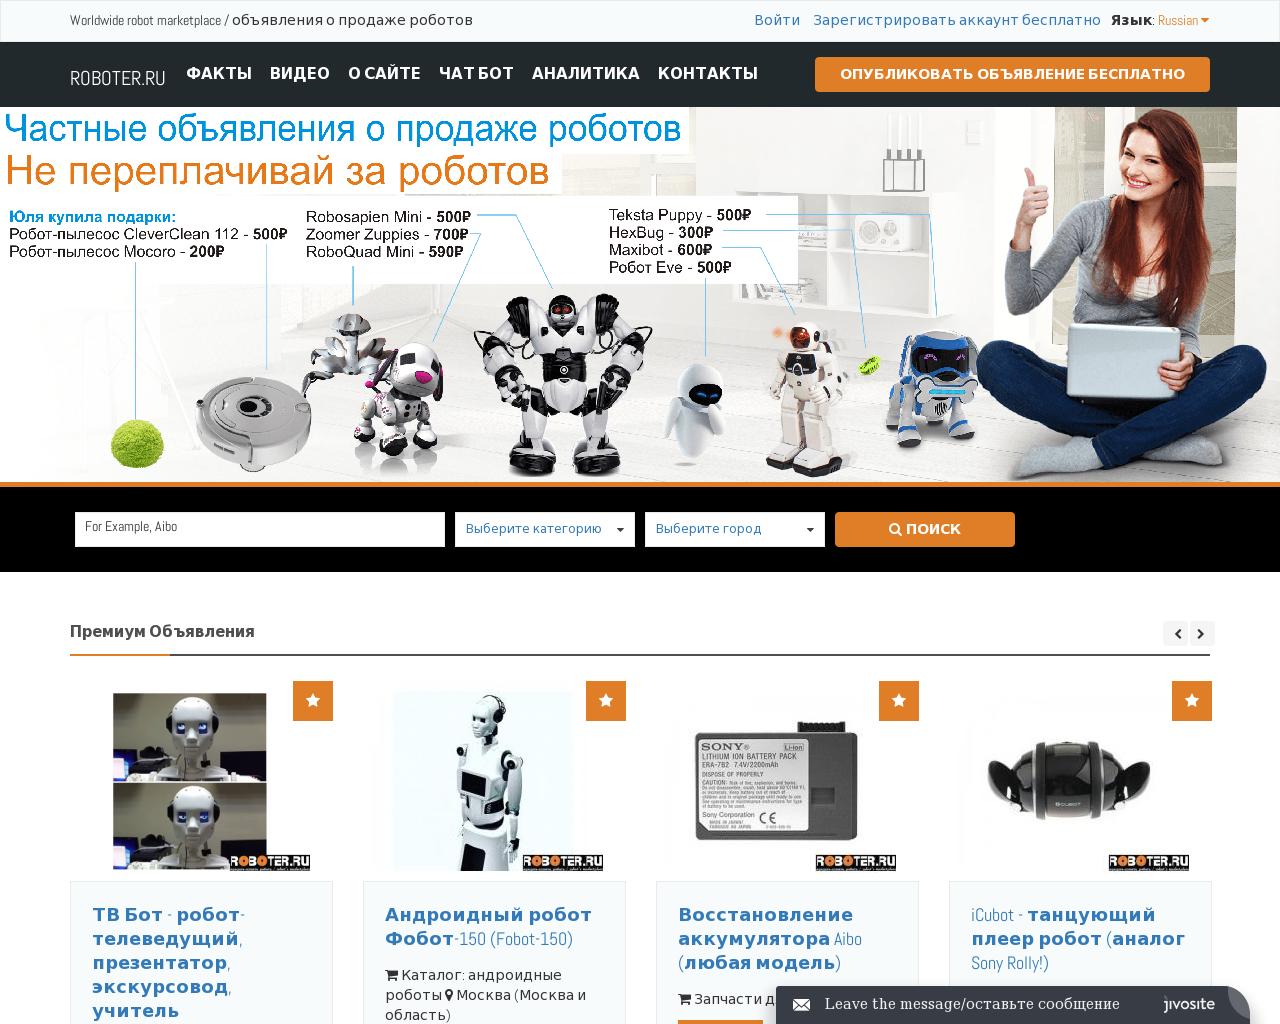 Изображение сайта roboter.ru в разрешении 1280x1024